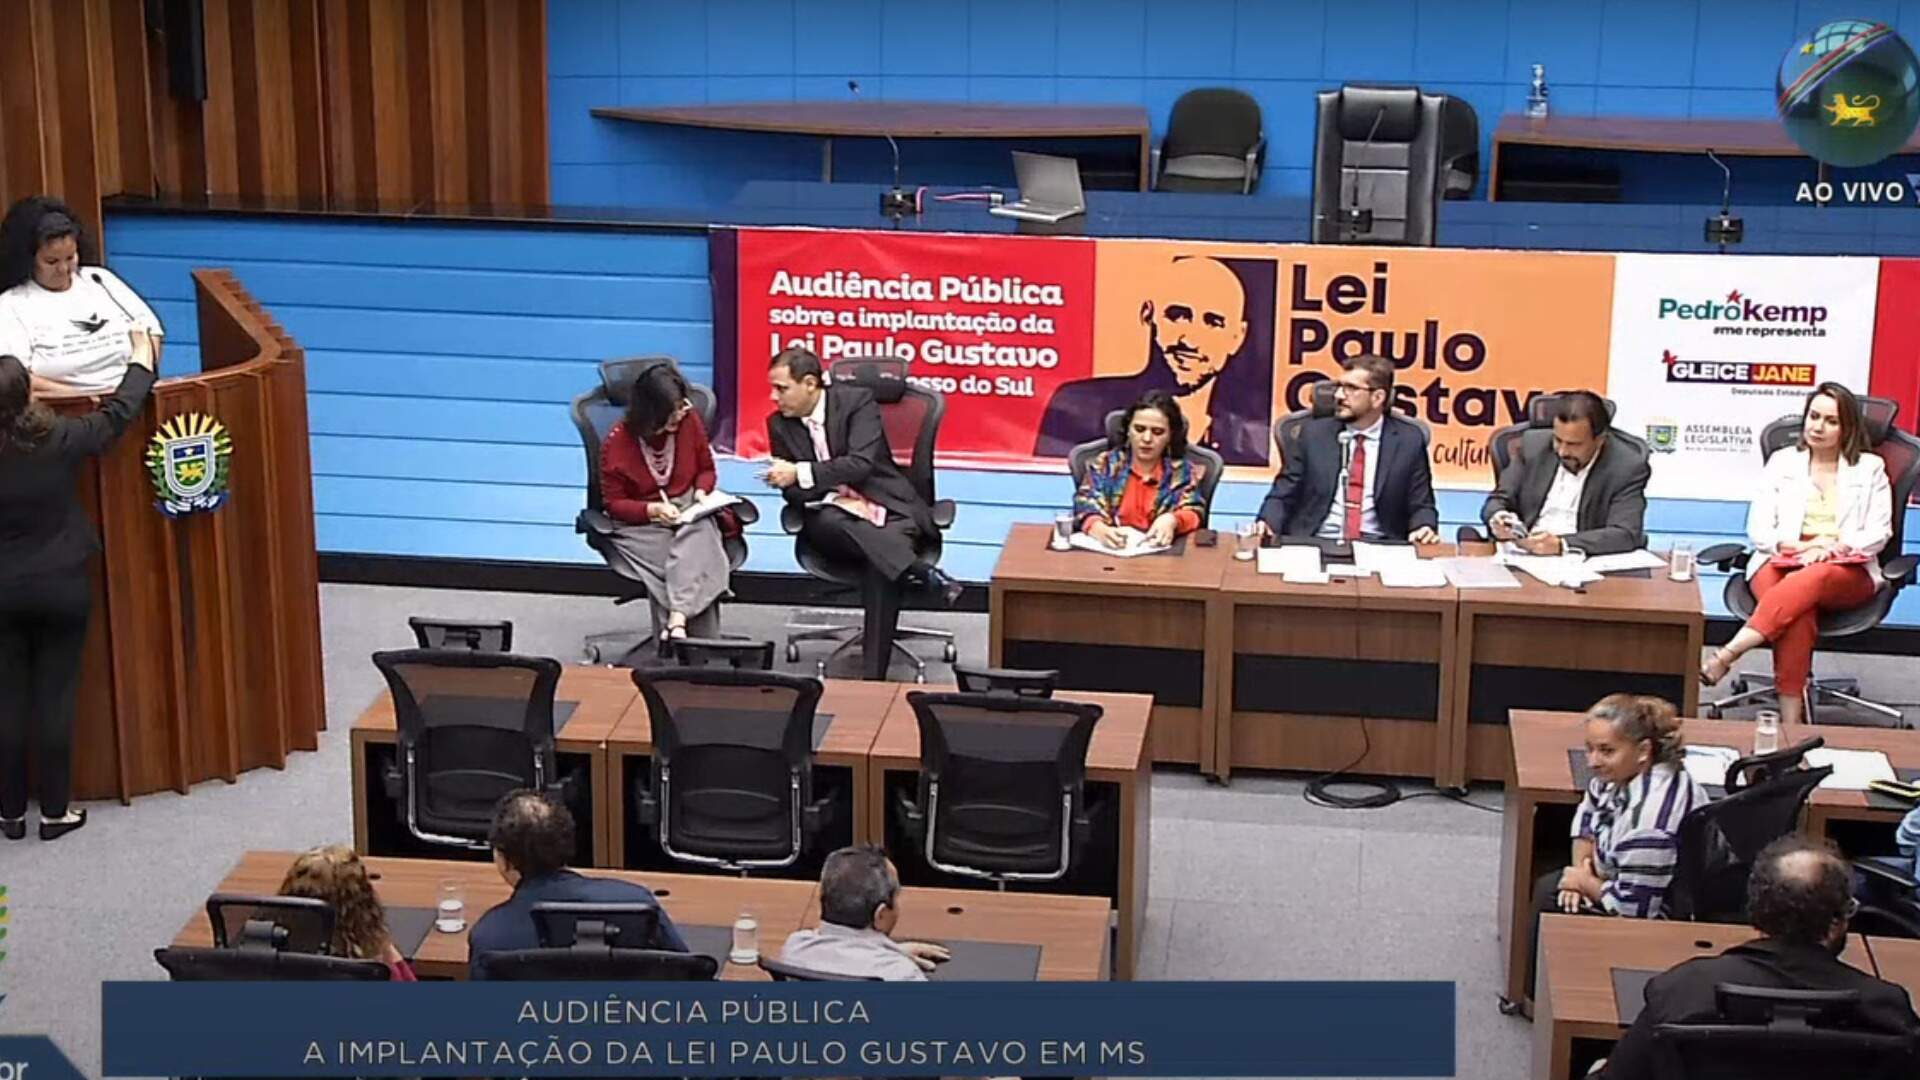 Setor cultural MS pede desburocratização no acesso aos recursos da Lei Paulo Gustavo